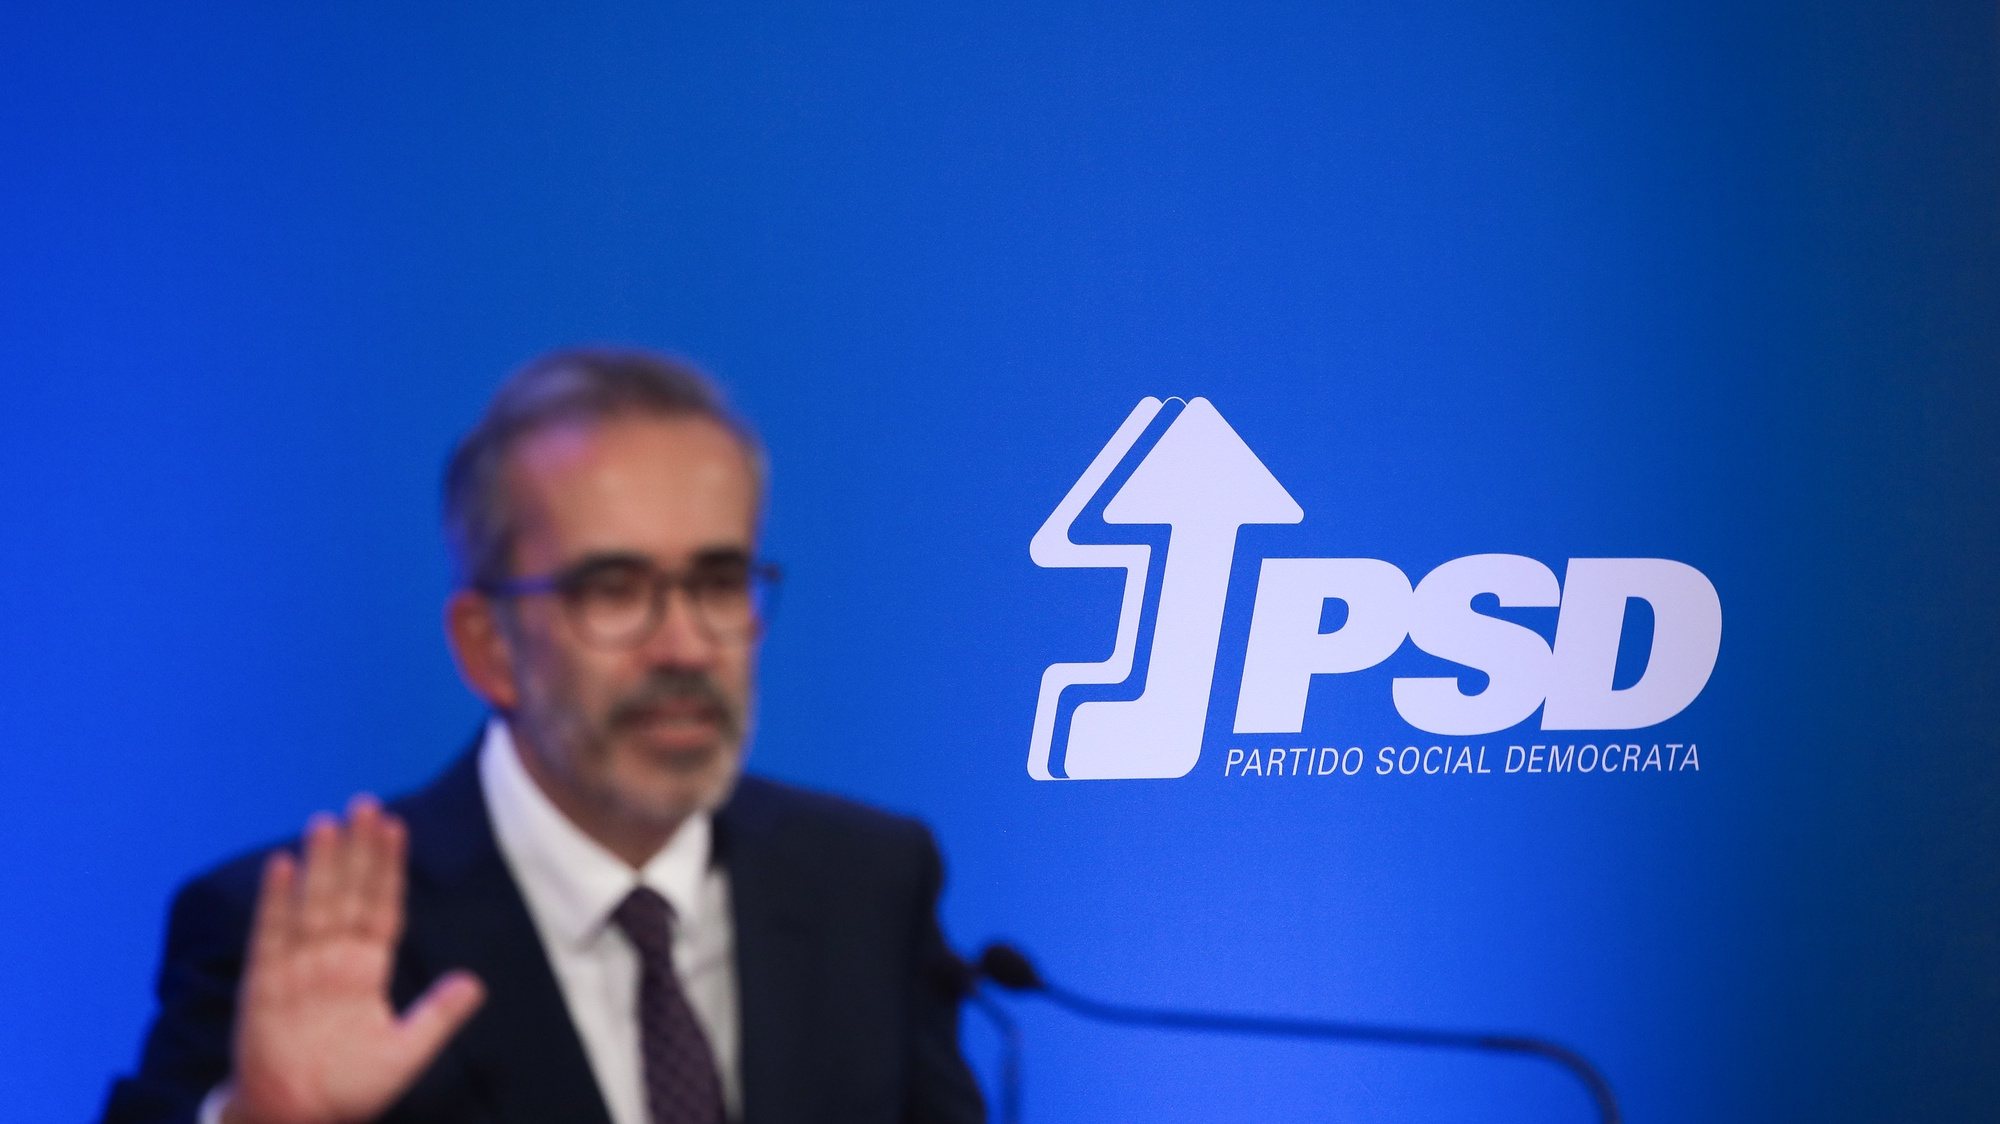 O eurodeputado do Partido Social Democrata (PSD), Paulo Rangel, durante a apresentação da sua candidatura à liderança do partido, em Lisboa, 15 de outubro de 2021. As eleições diretas do Partido Social Democrata ocorrem a 4 de dezembro. MÁRIO CRUZ/LUSA